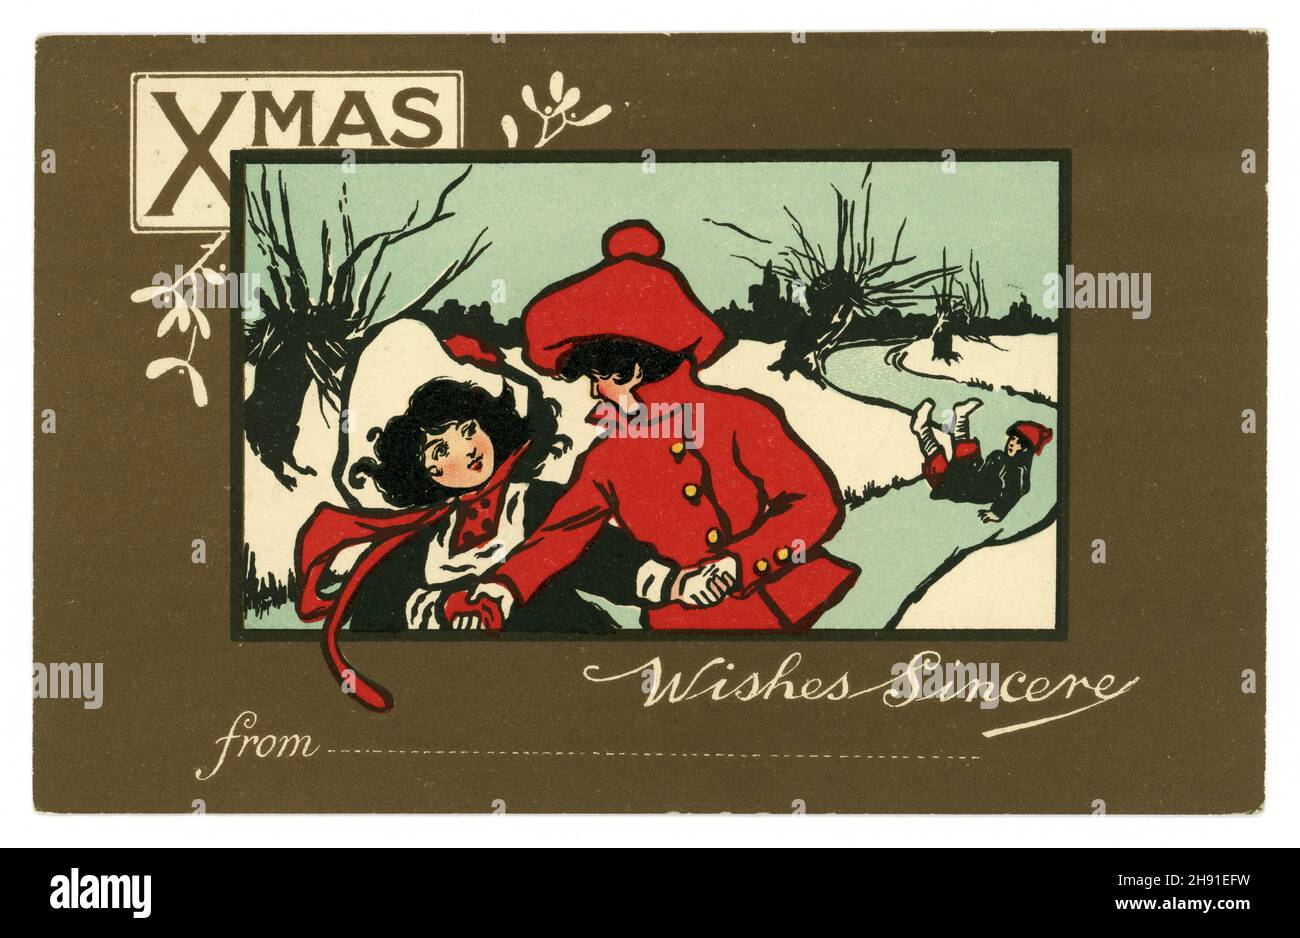 Original Edwardian era tarjeta postal niño y niña patinaje sobre hielo, escena de invierno, posiblemente por la famosa artista británica Ethel Parkinson, el mensaje es deseos sinceros de .. Con una línea para poner su nombre, publicado el 24 de diciembre de 1906, Reino Unido Foto de stock